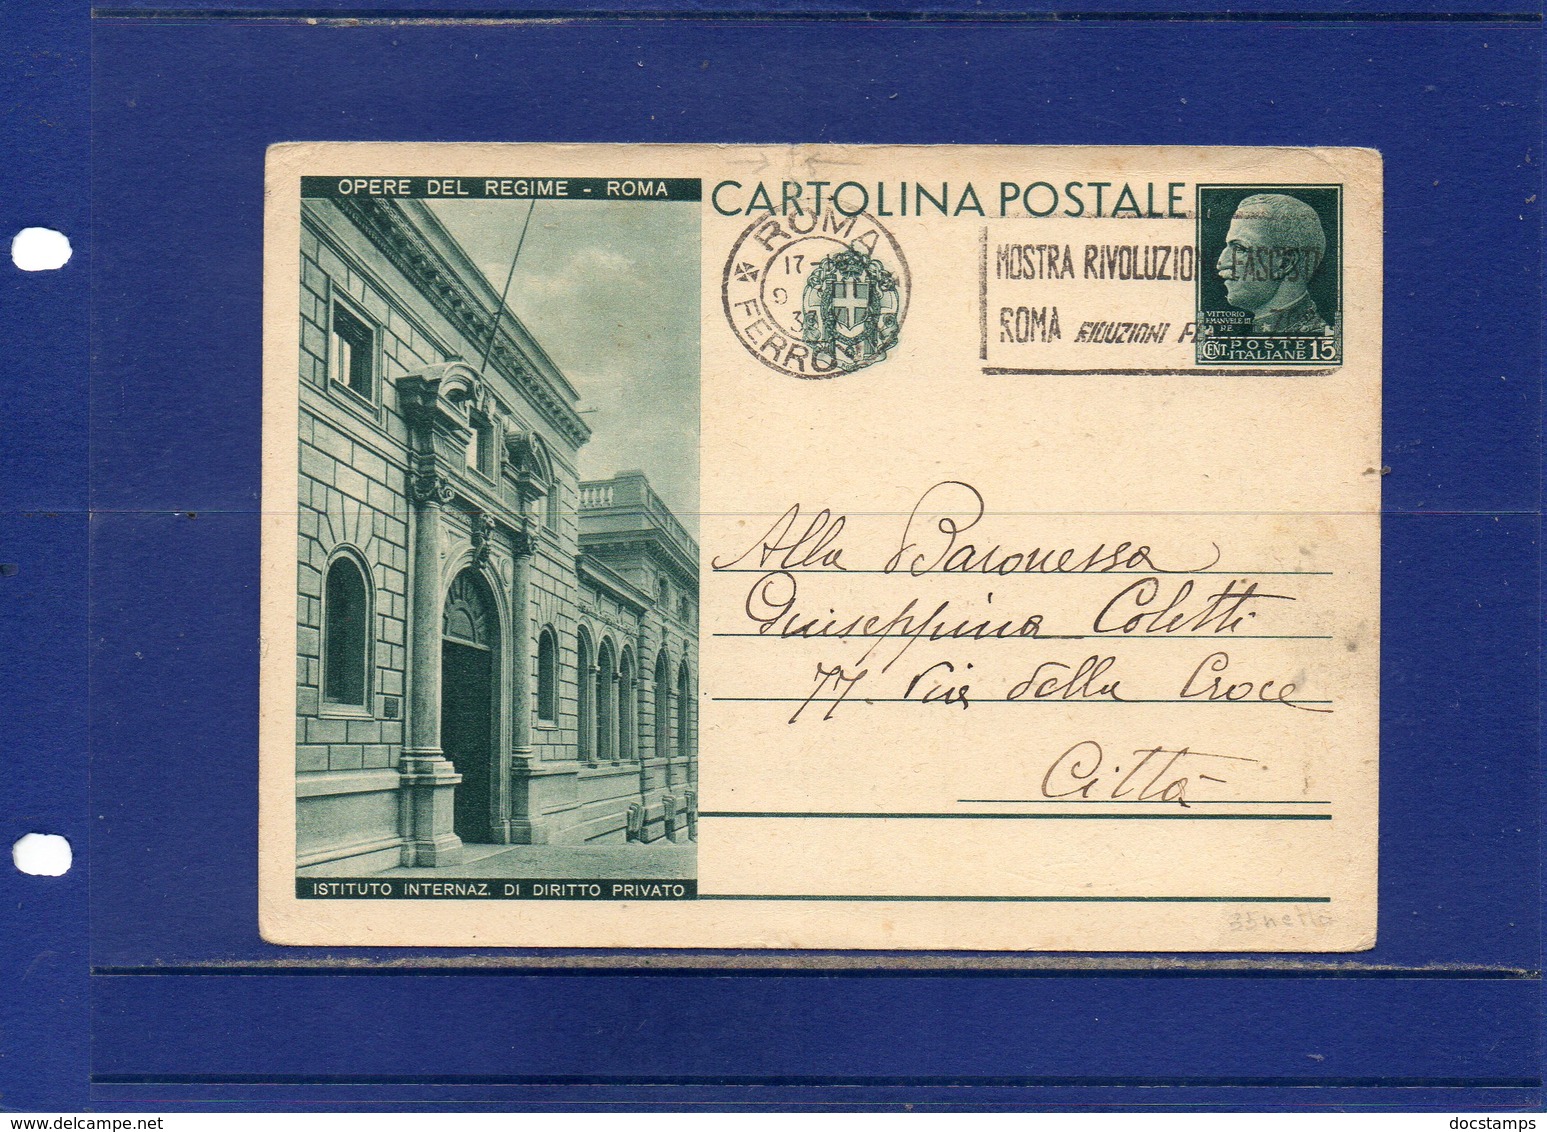 ##(DAN195)-1931-Cartolina Postale  Opere Del Regime Cent.15 Istituto Inter. Dirirro Privato  Cat. Filagrano C71/12 Usata - Interi Postali